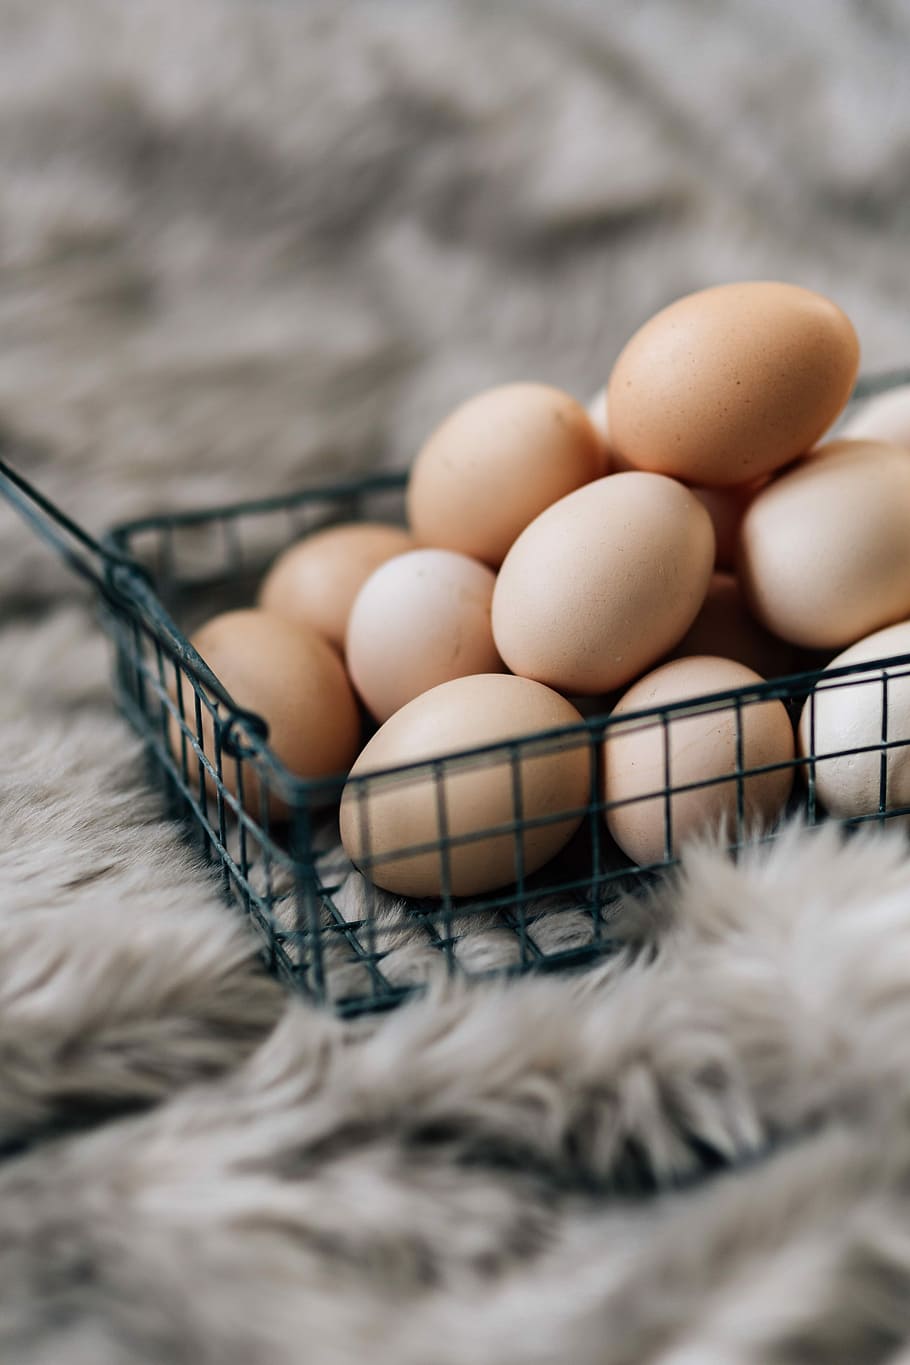 Wire mesh basket with fresh farm eggs, breakfast, food, healthy